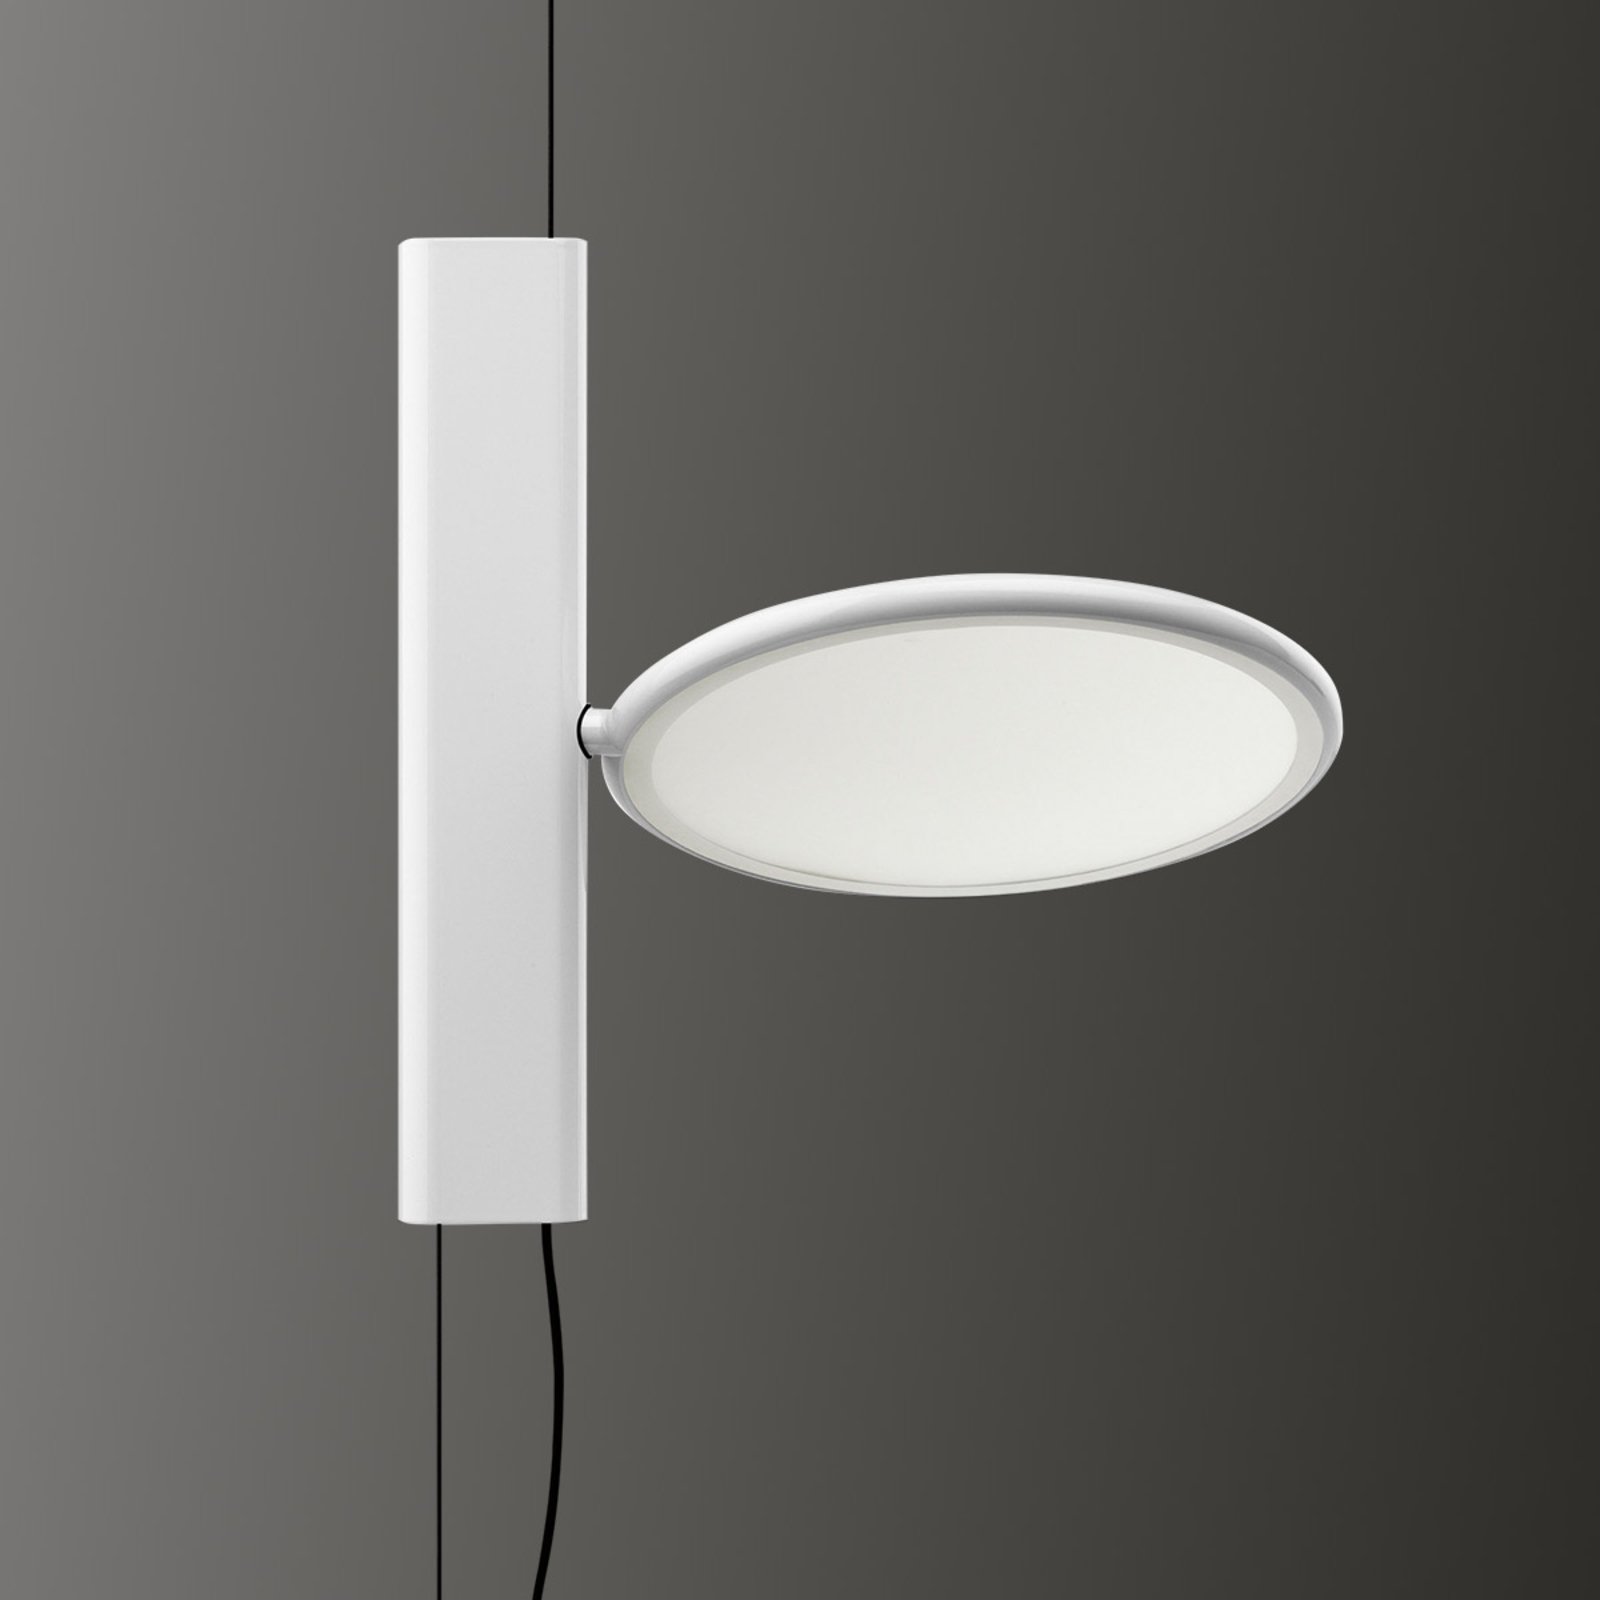 FLOS OK - stojící LED závěsné světlo v bílé barvě